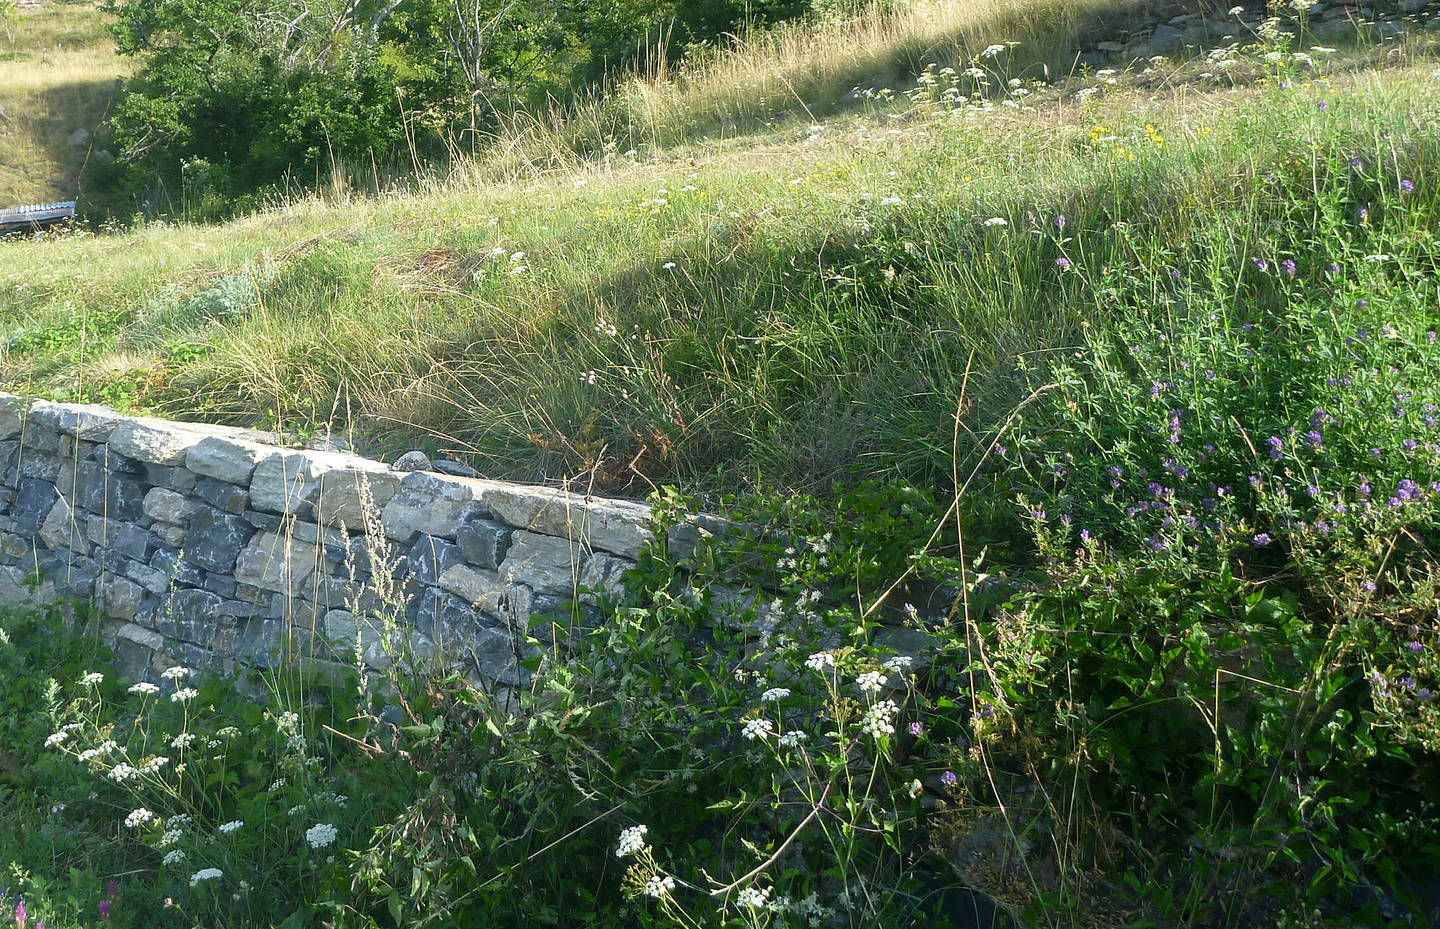 Les murs en pierres sèches sont des habitats importants pour de nombreux animaux et plantes. Merci aux bénévoles pour cette réalisation!